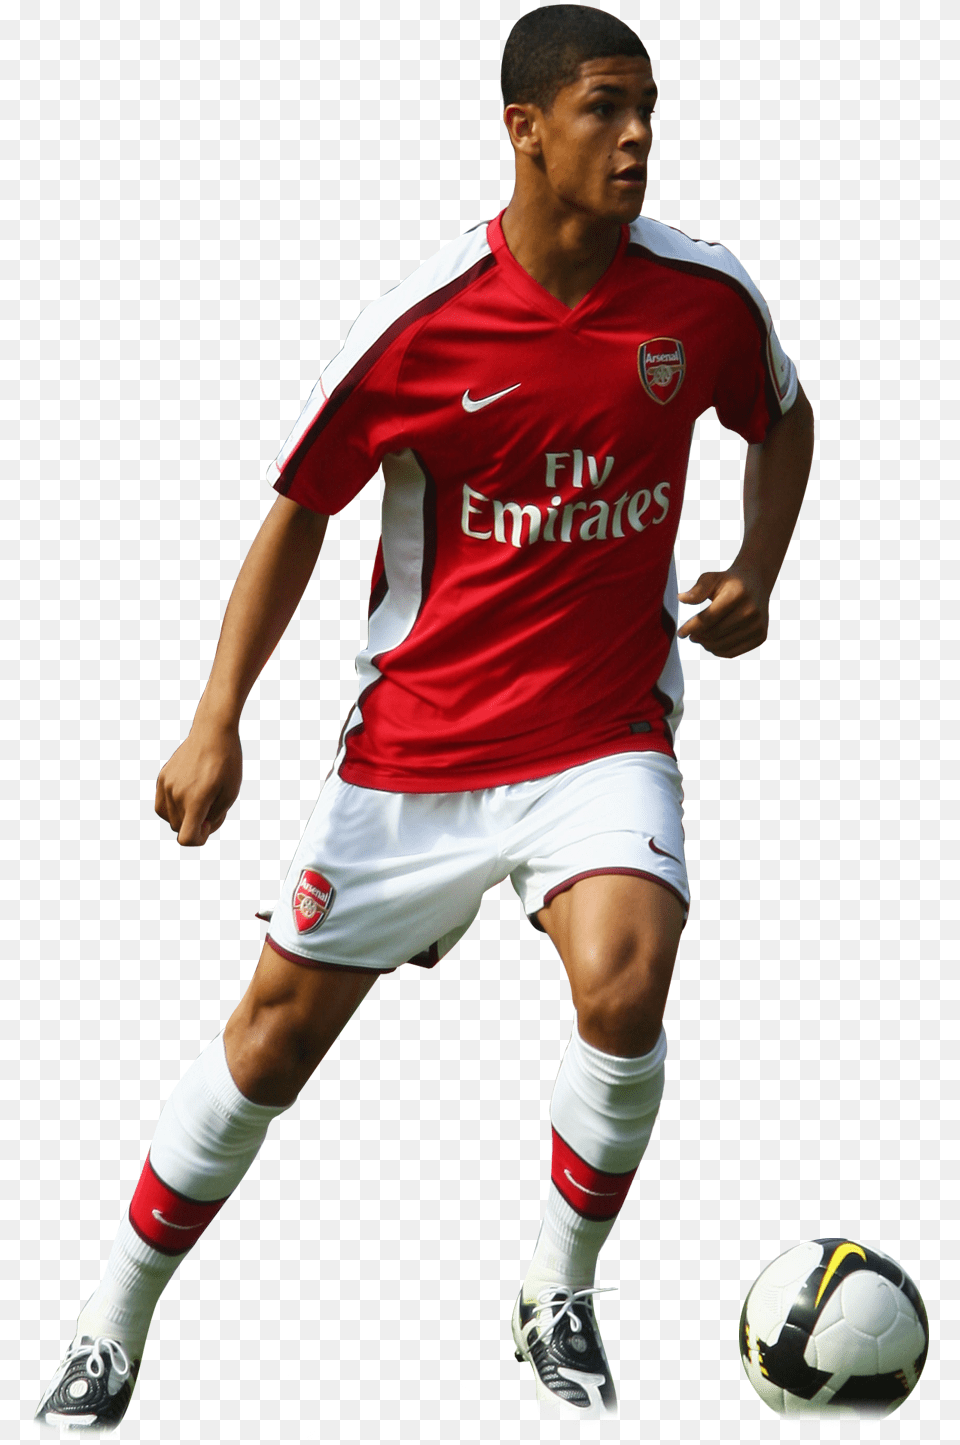 Arsenal Football Players Arsenal Football Player, Ball, Sport, Sphere, Soccer Ball Png